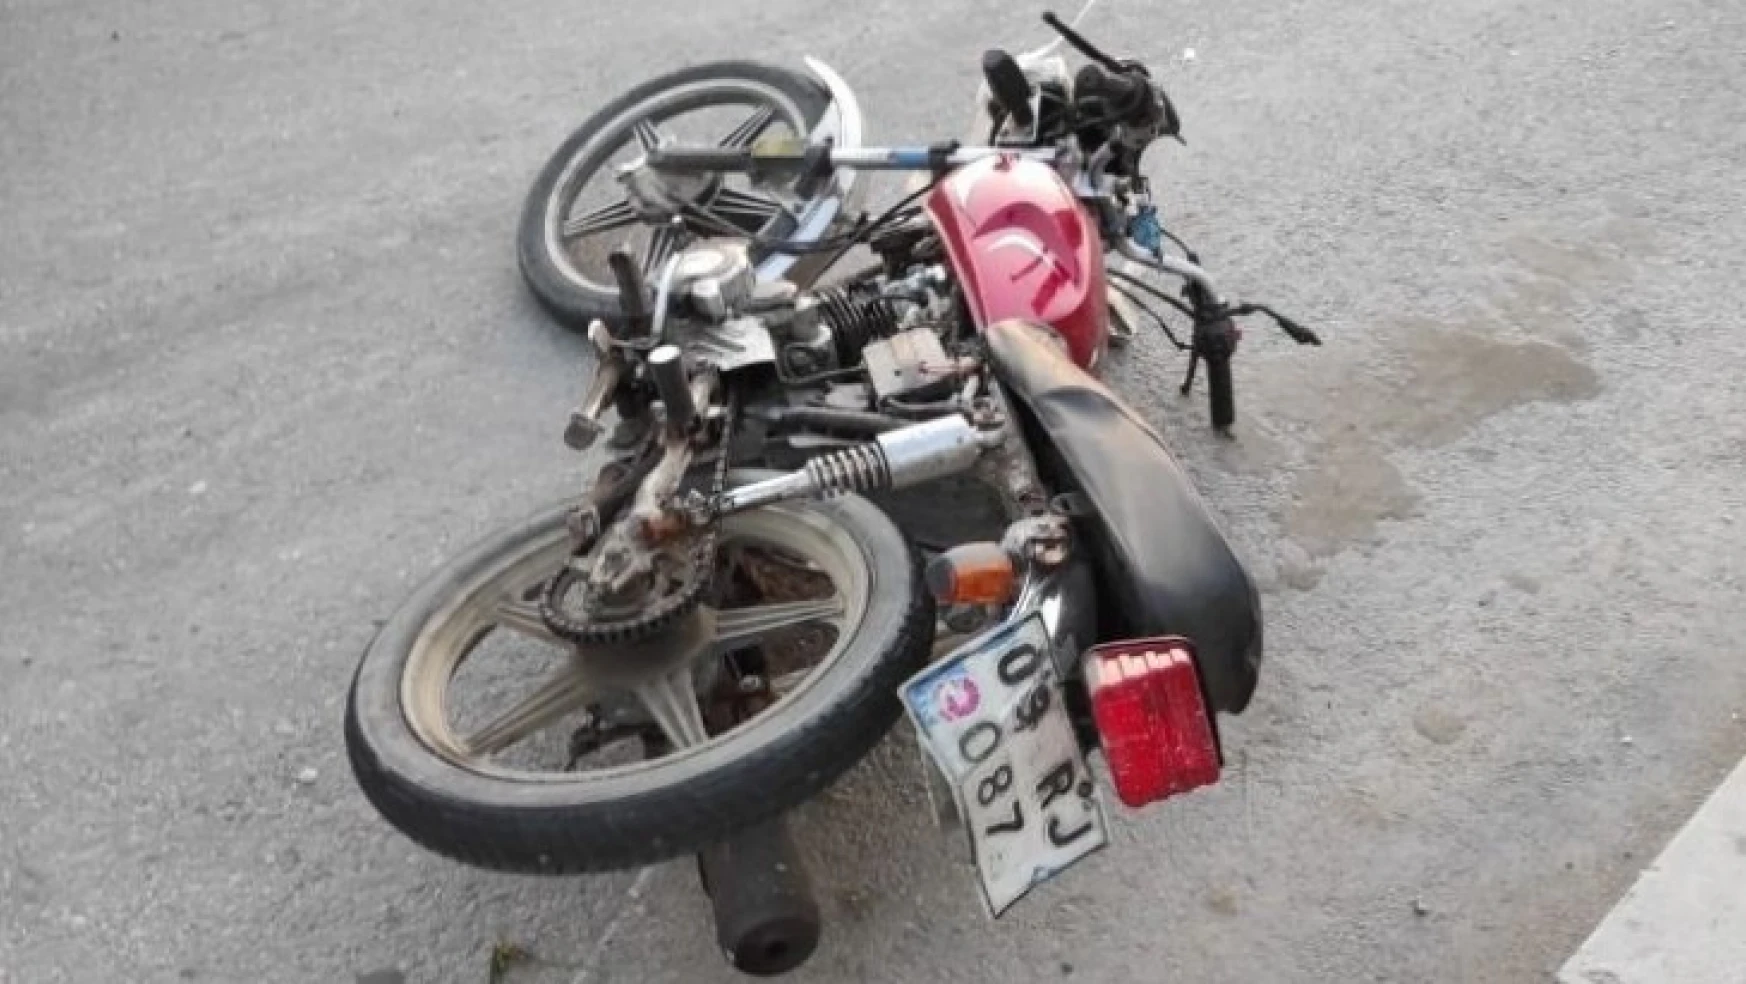 Nazilli'de motosiklet kazası: 1 ağır yaralı